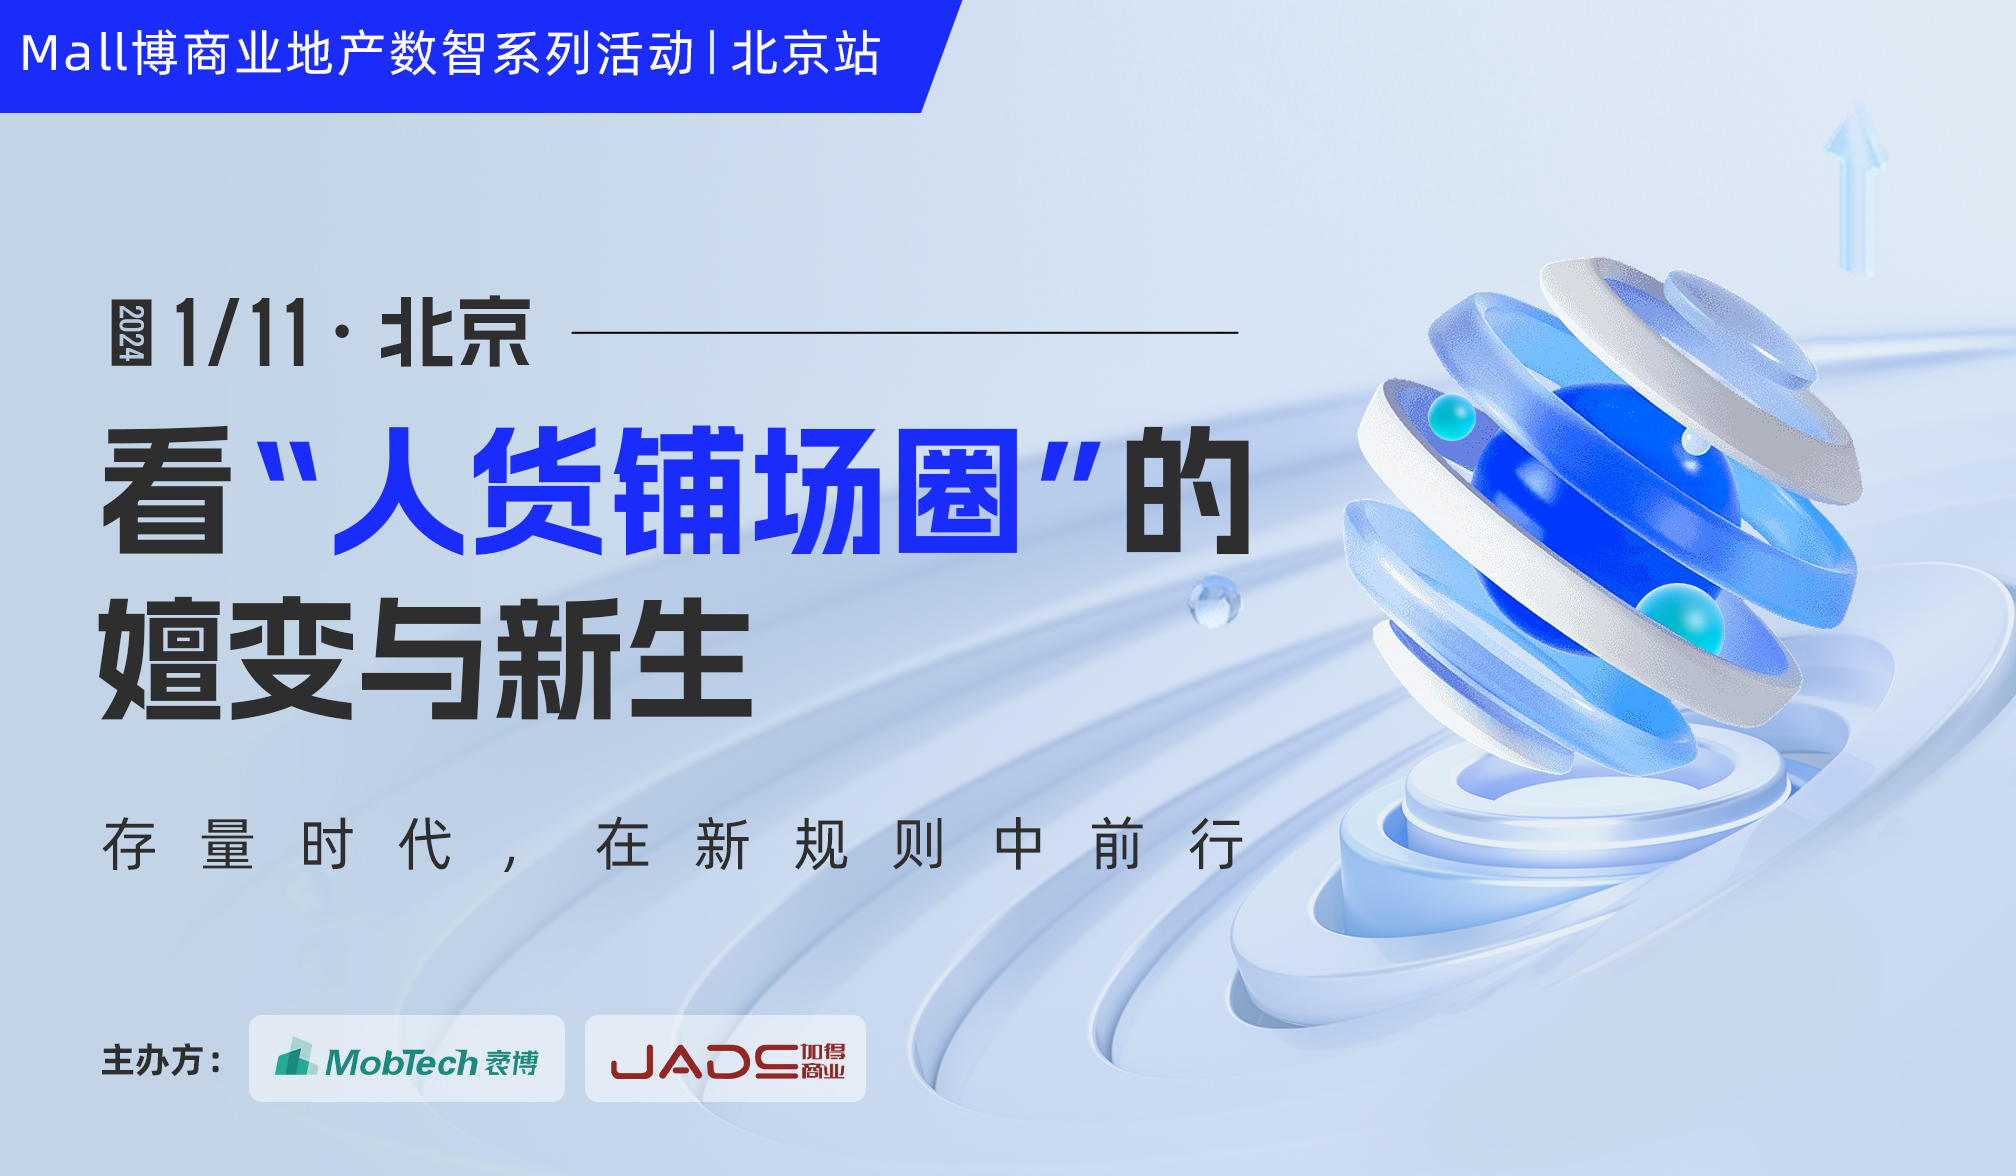 活动预告 | Mall博商业地产数智系列活动北京站来啦！